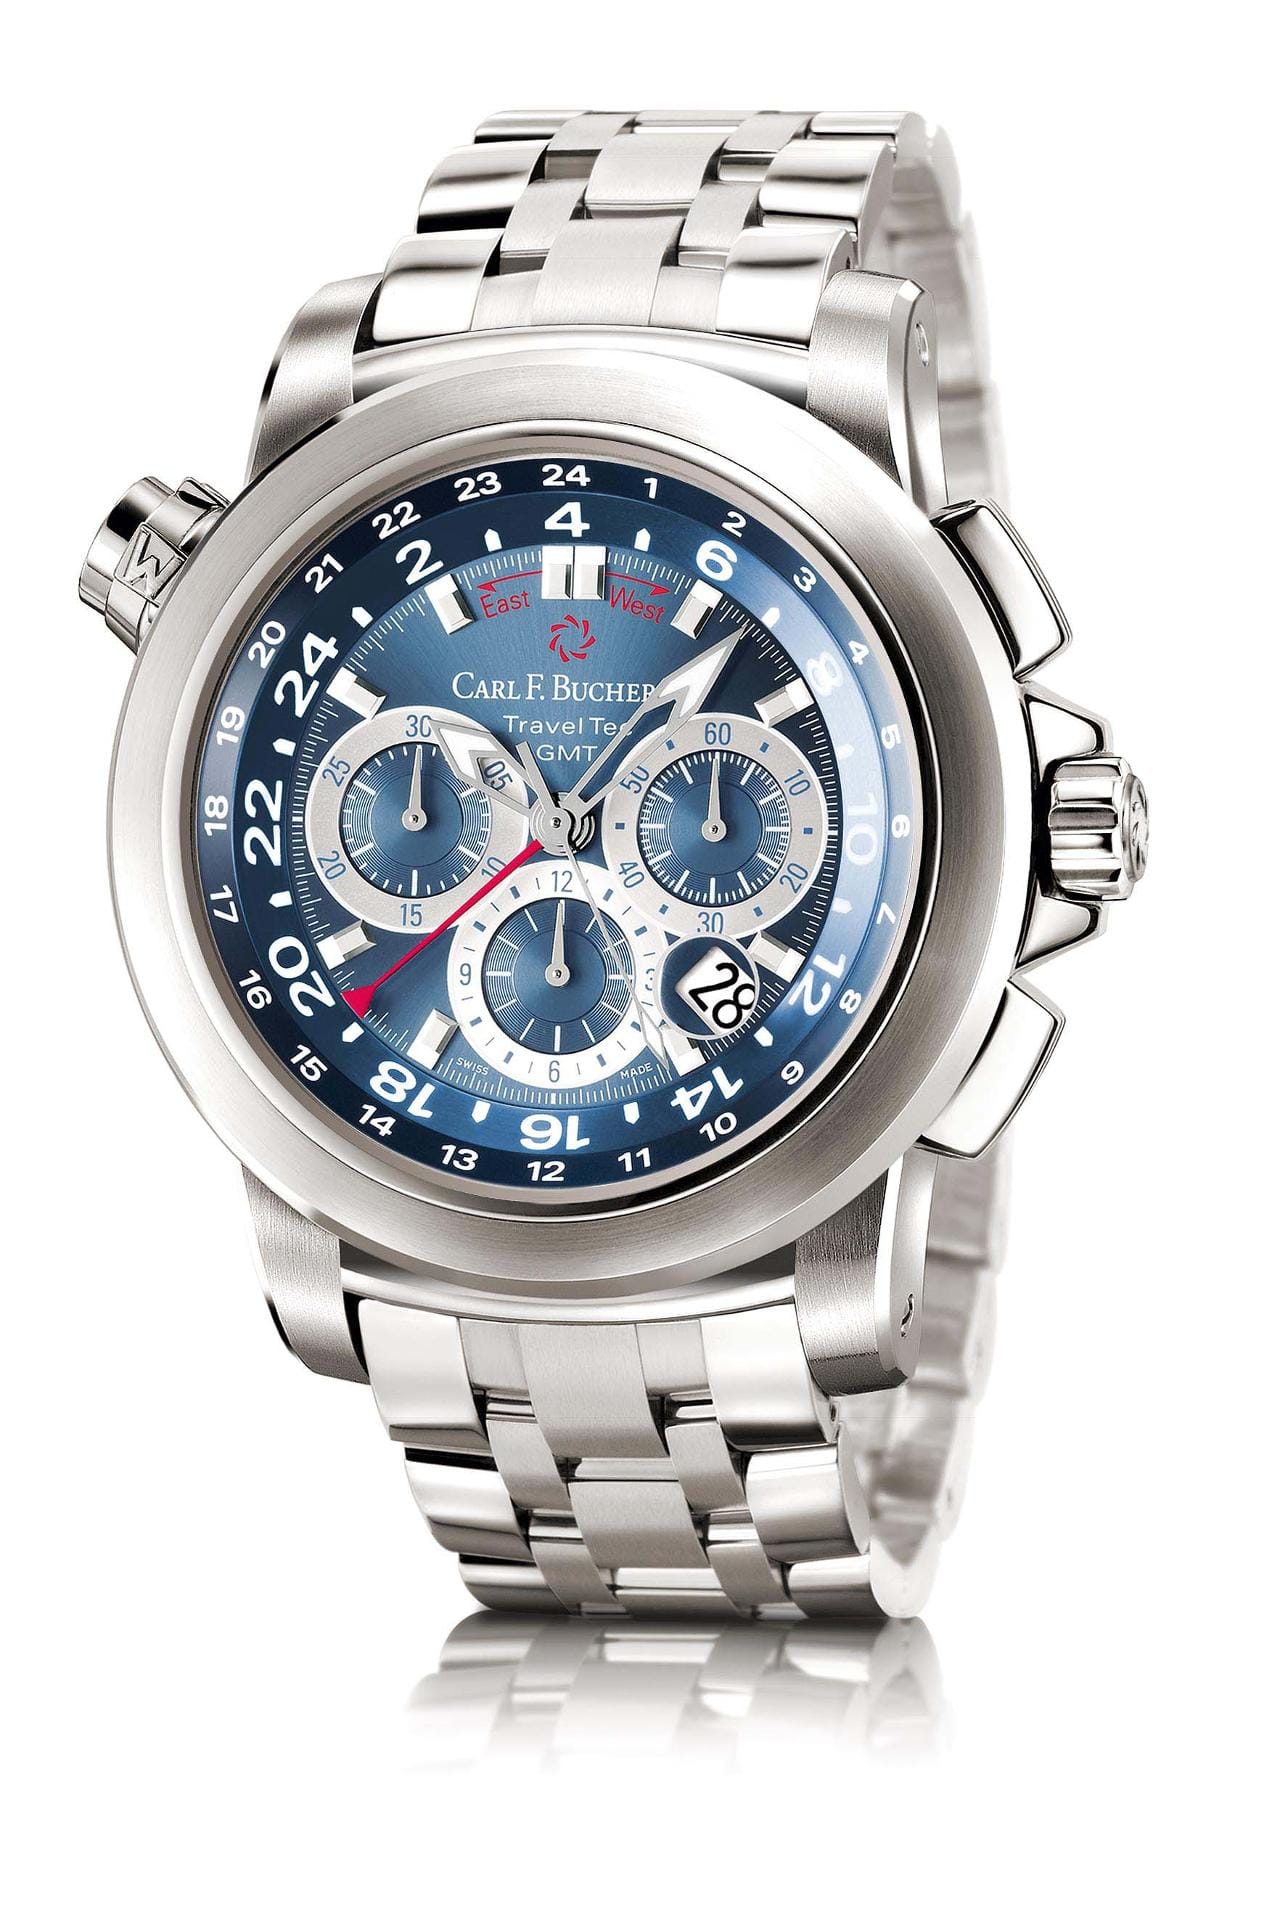 Zahlreicher Hersteller bieten Uhren mit blauem Ziffernblatt. Typisch ist die Kombination aus Edelstahlgehäuse und blauem Zifferblatt wie bei der Patravi TravelTec (Preis ab 9800 Euro) vom Schweizer Hersteller Carl F. Bucherer.